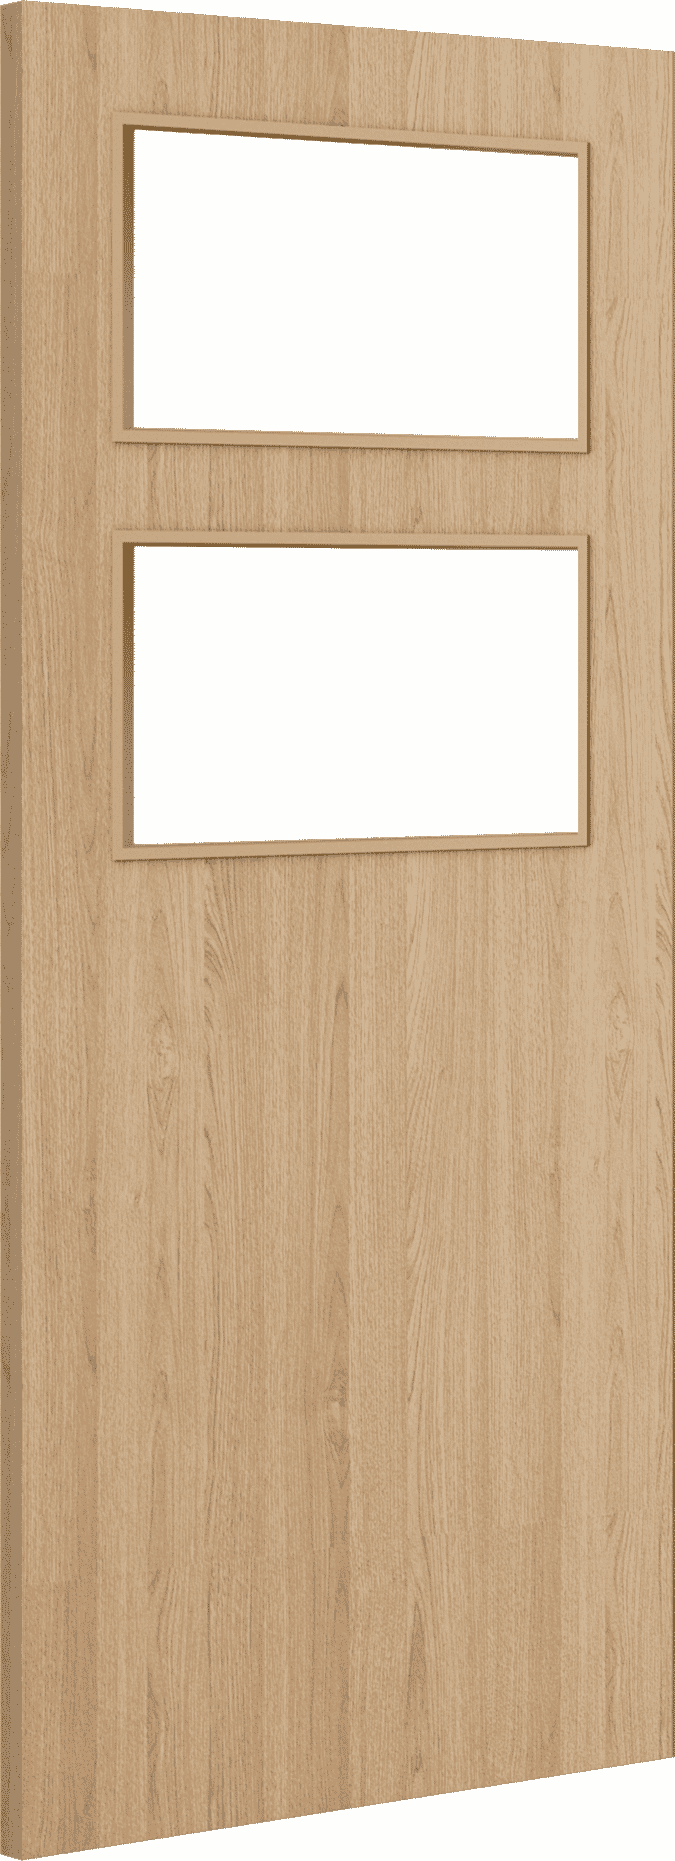 1981mm x 686mm x 44mm (27") Architectural Oak 02 Clear Glazed - Prefinished FD30 Fire Door Blank